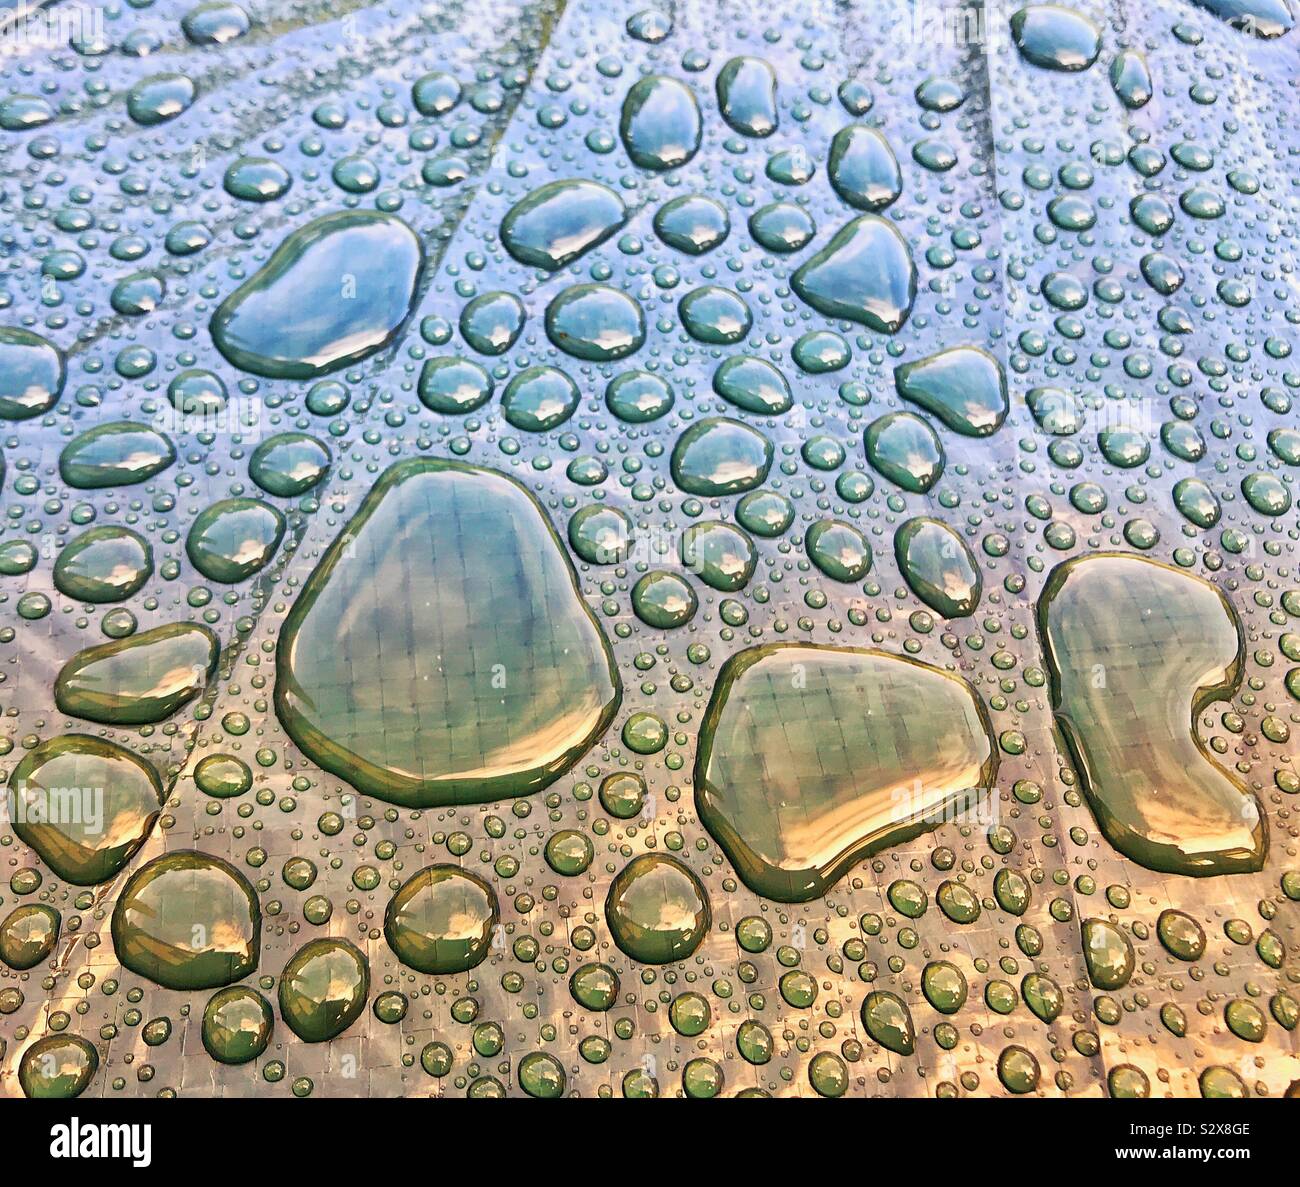 Globules de pluie sur une surface en plastique après une tempête Banque D'Images